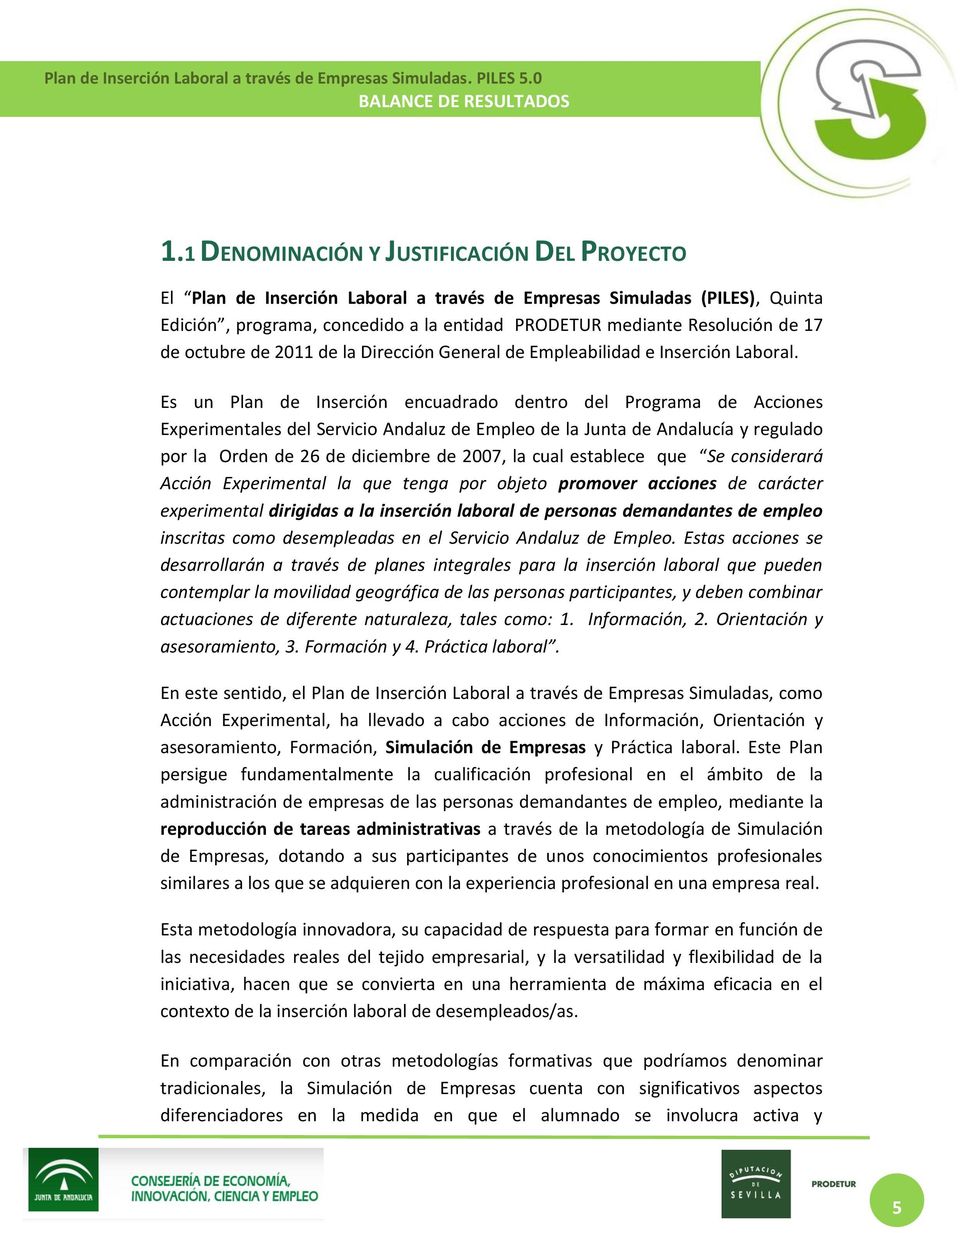 Es un Plan de Inserción encuadrado dentro del Programa de Acciones Experimentales del Servicio Andaluz de Empleo de la Junta de Andalucía y regulado por la Orden de 26 de diciembre de 2007, la cual